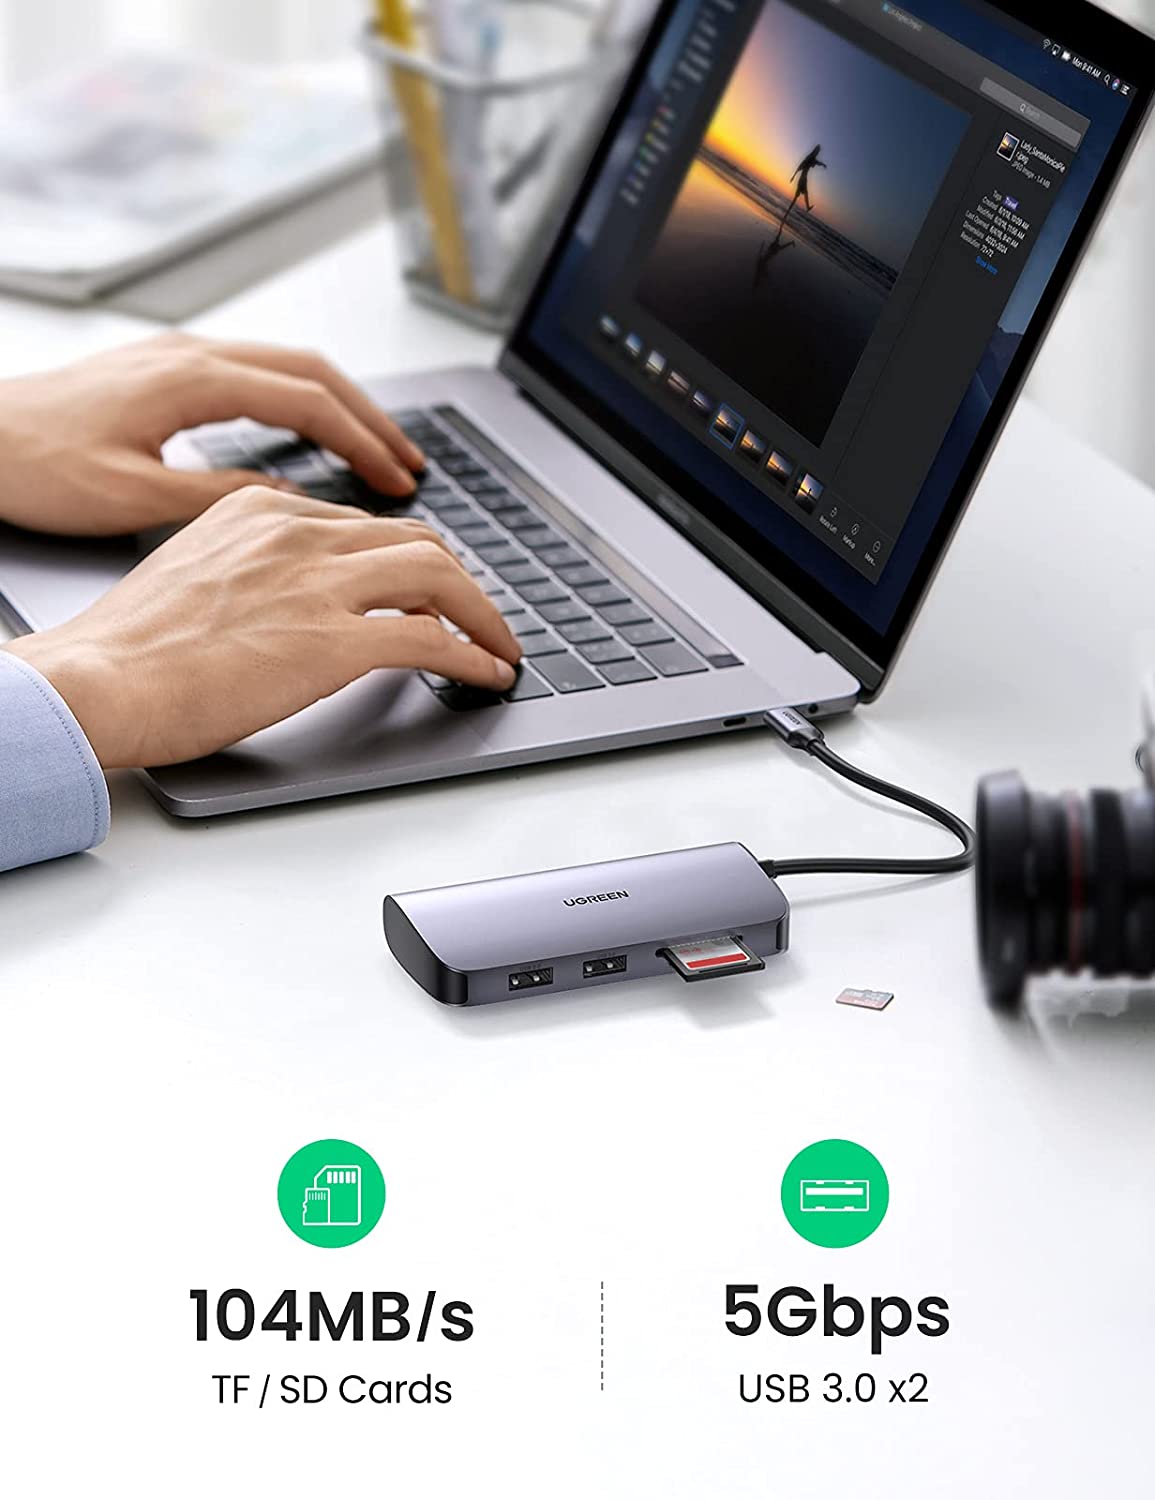 UGREEN 7-in-1 USB-C Hub, HDMI, Ethernet, SD Card